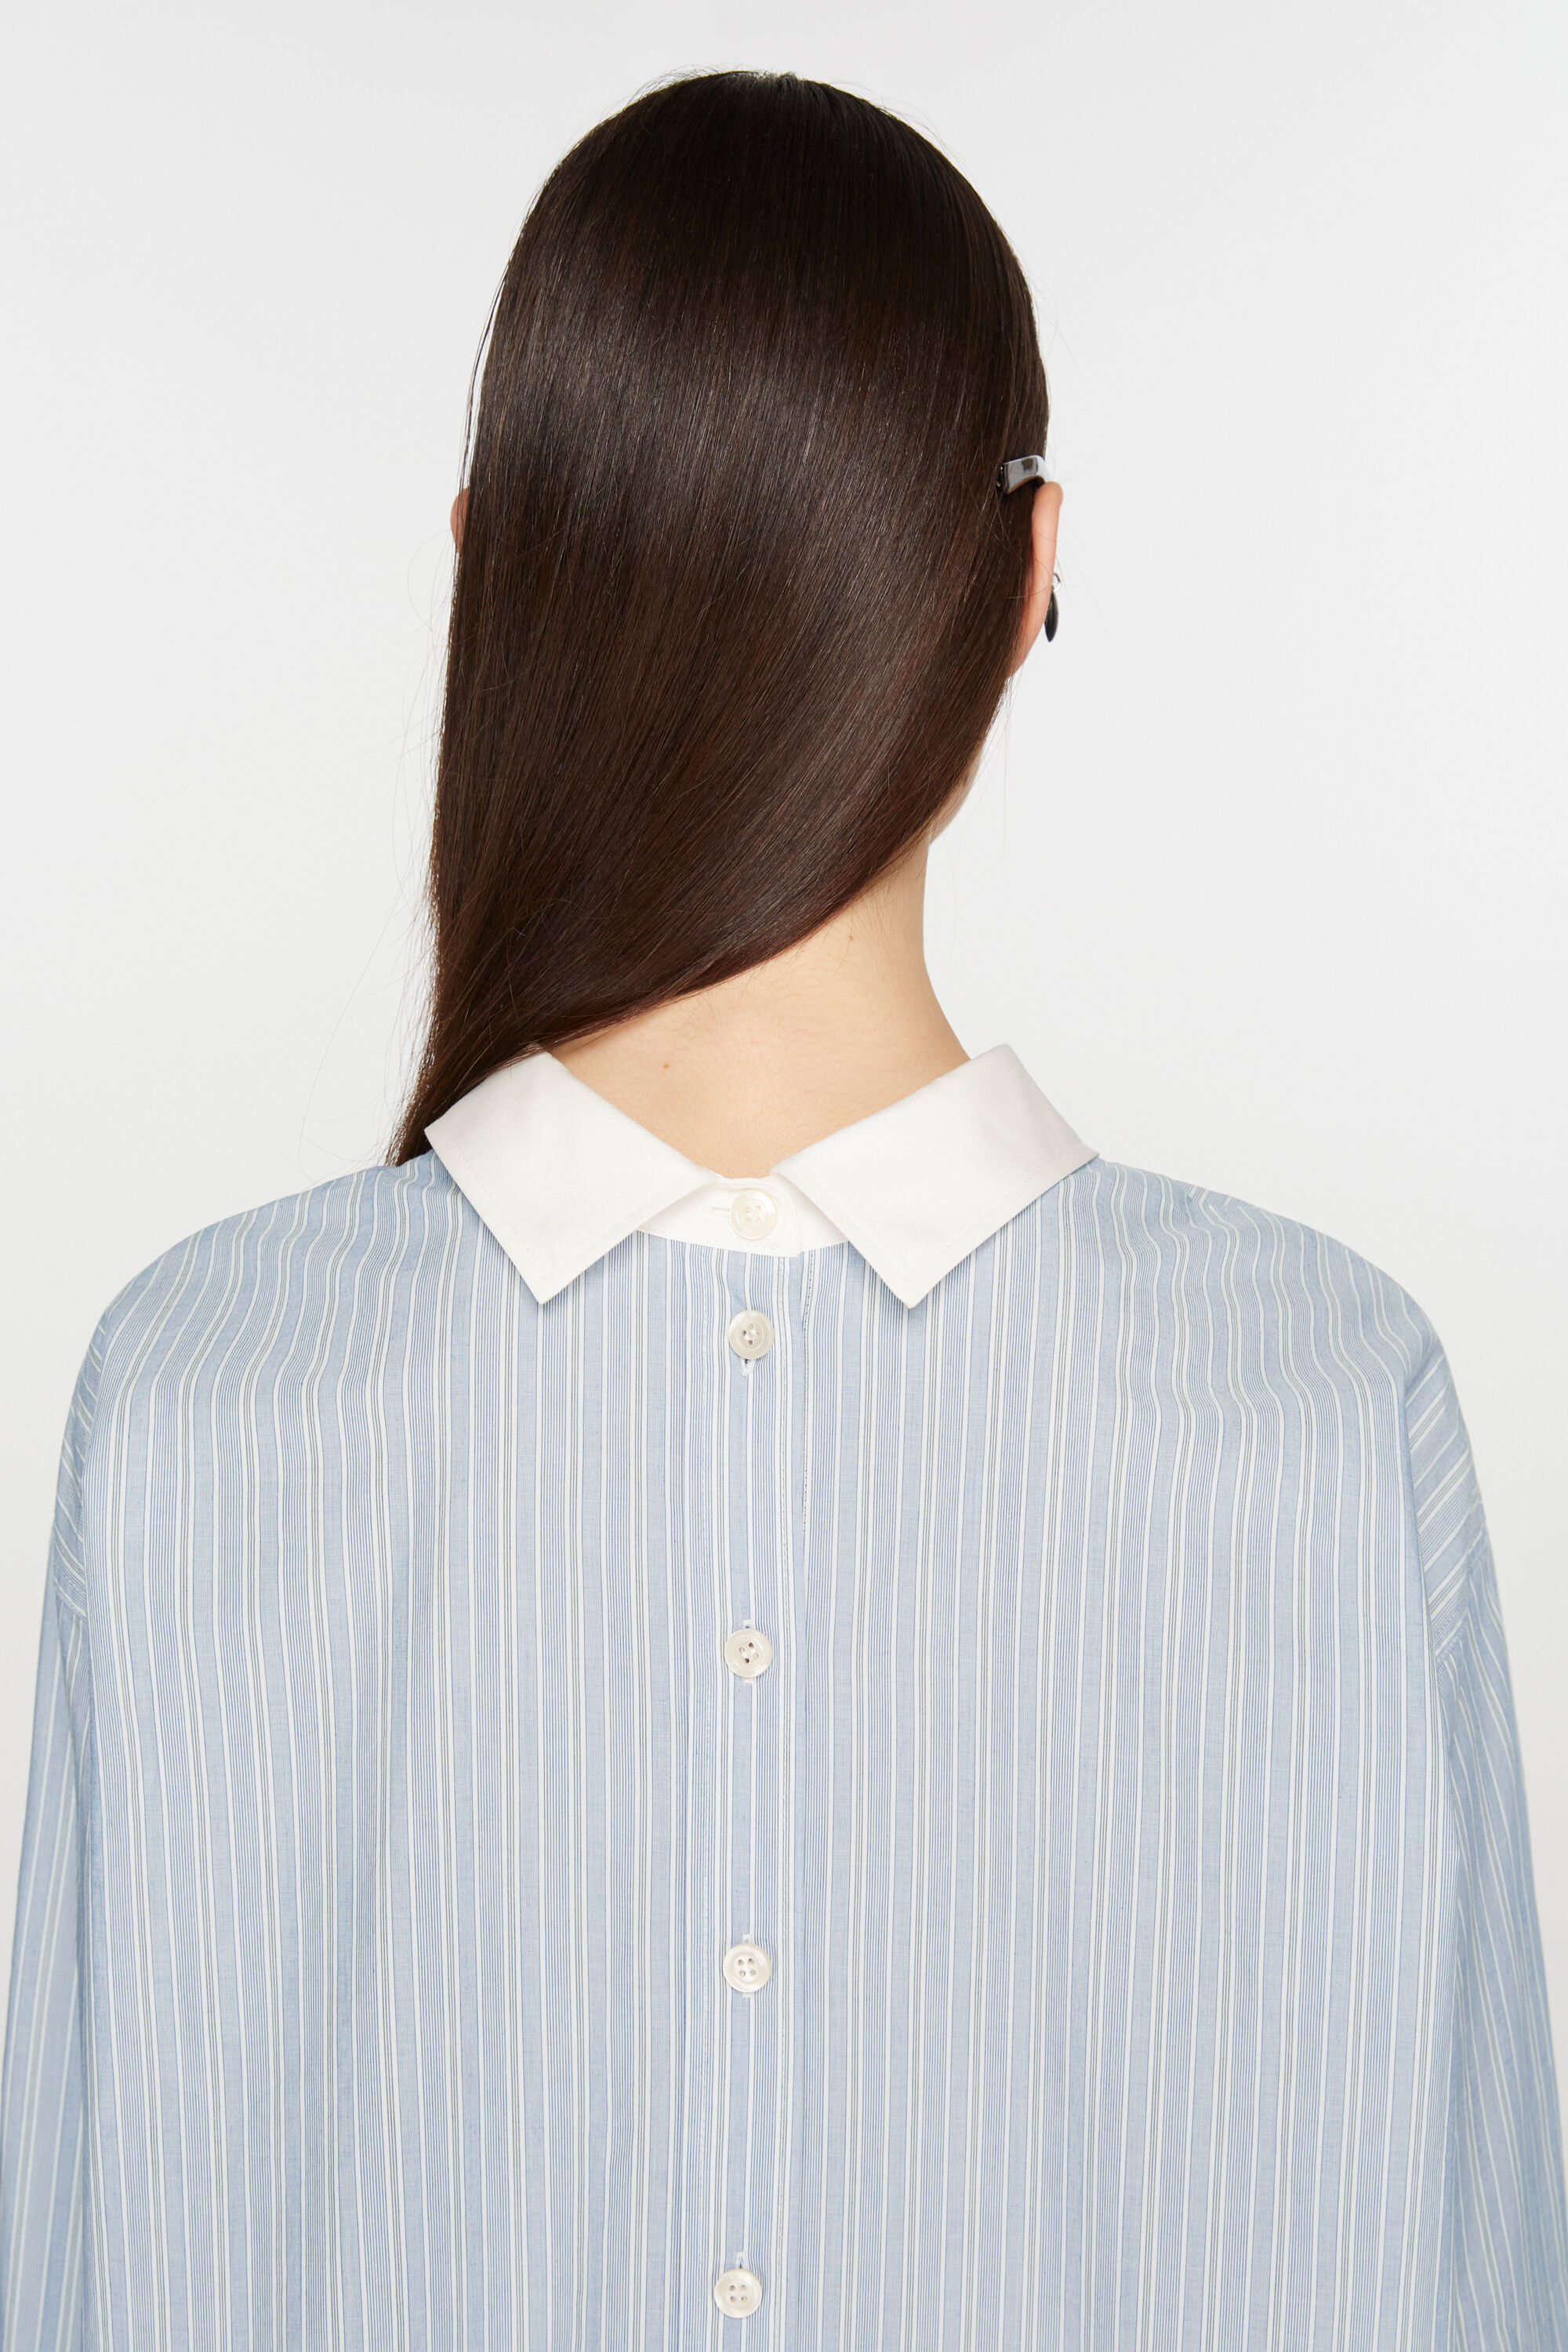 【新品未使用】ACNE STUDIOS ストライプ シャツ ブルー Mサイズシャツ